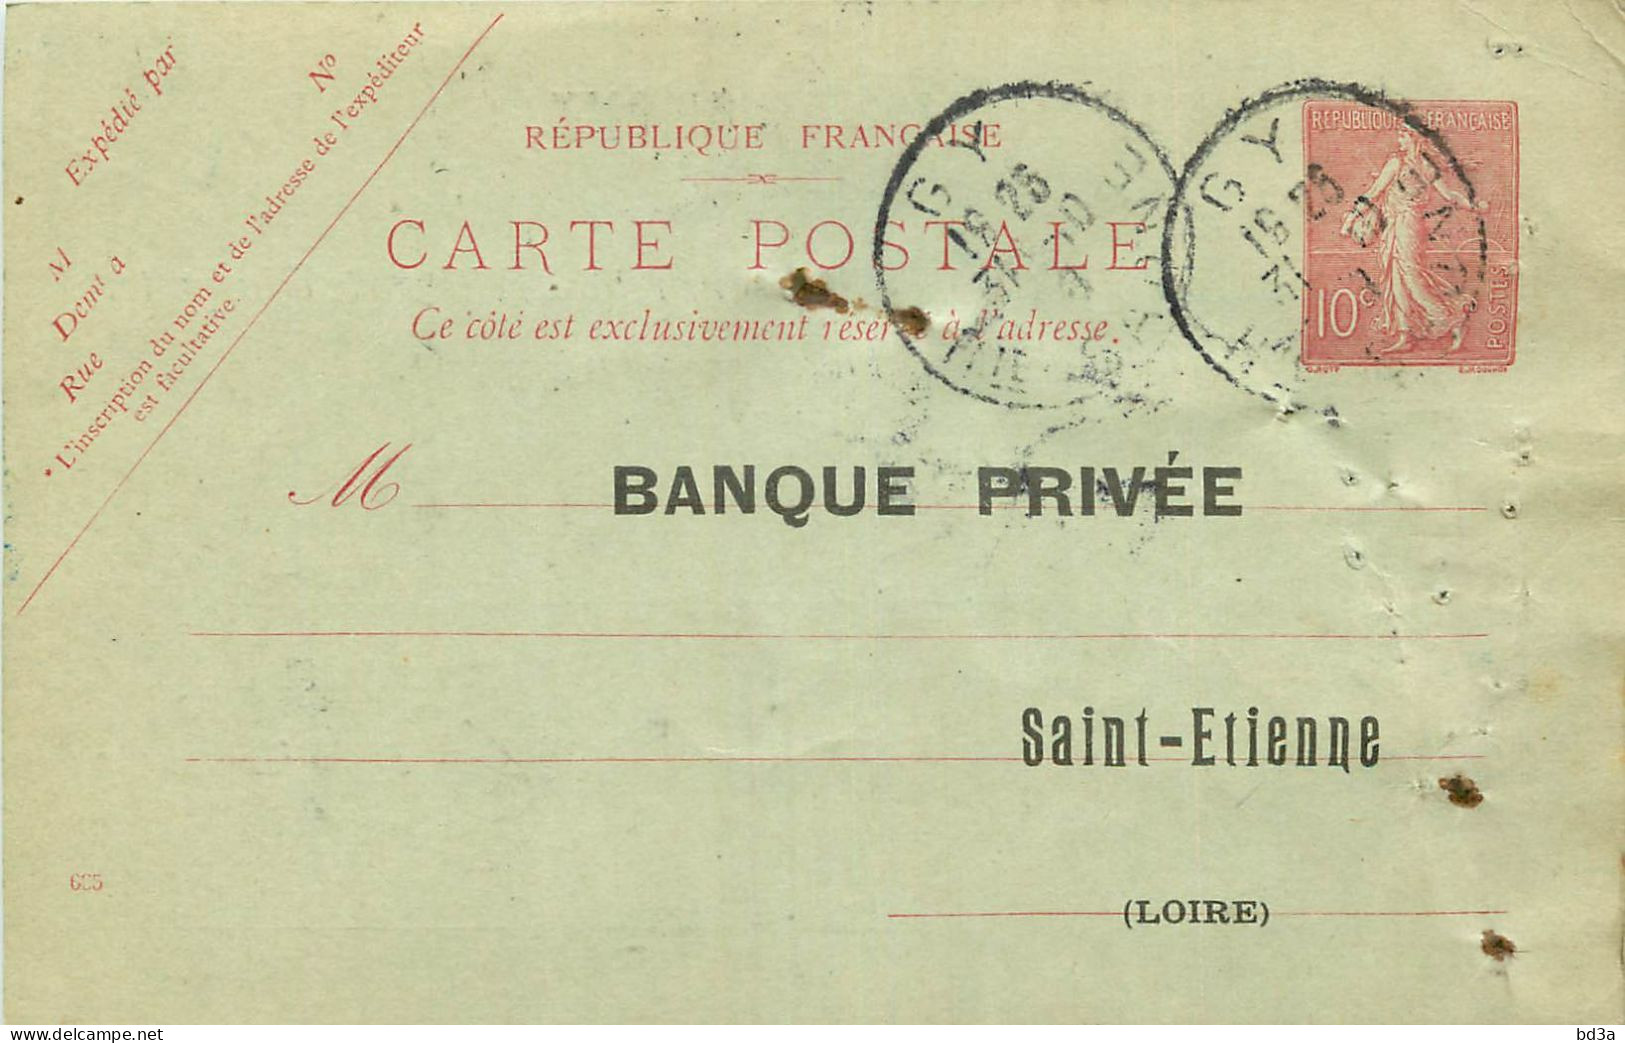 ENTIERS POSTAUX - N° 129 CPI - GY - HTE SAONE - 1908 - BANQUE PRIVEE  SAINT ETIENNE - AVIS D'ENCAISSEMENT - Cartes Postales Repiquages (avant 1995)